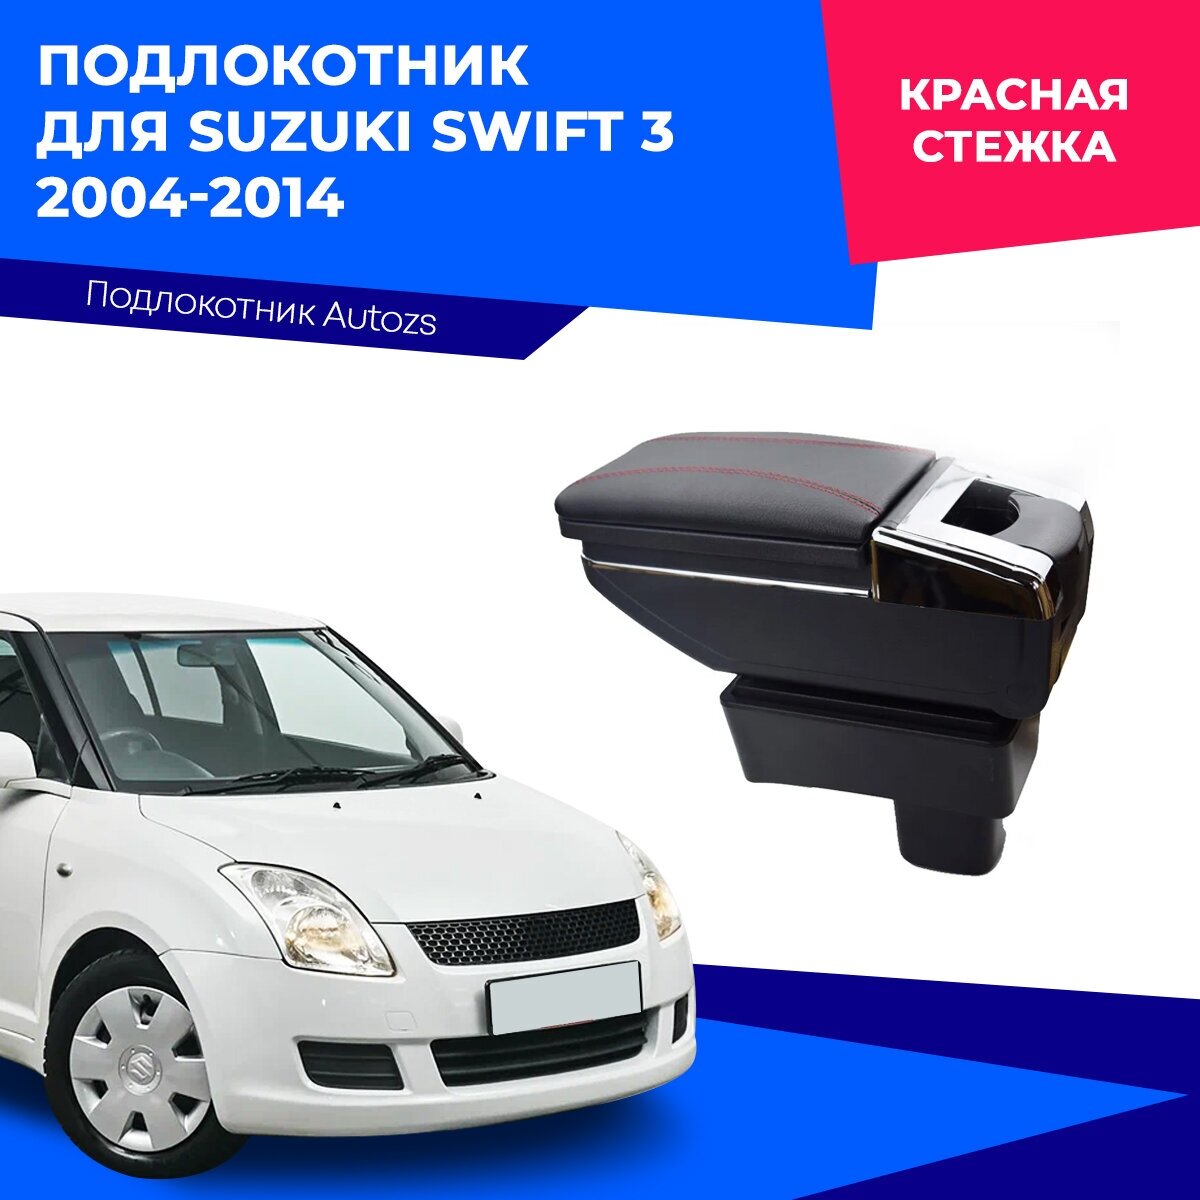 Подлокотник для Suzuki Swift 3 2004-2014 / Сузуки Свифт 3 2004-2014, экокожа